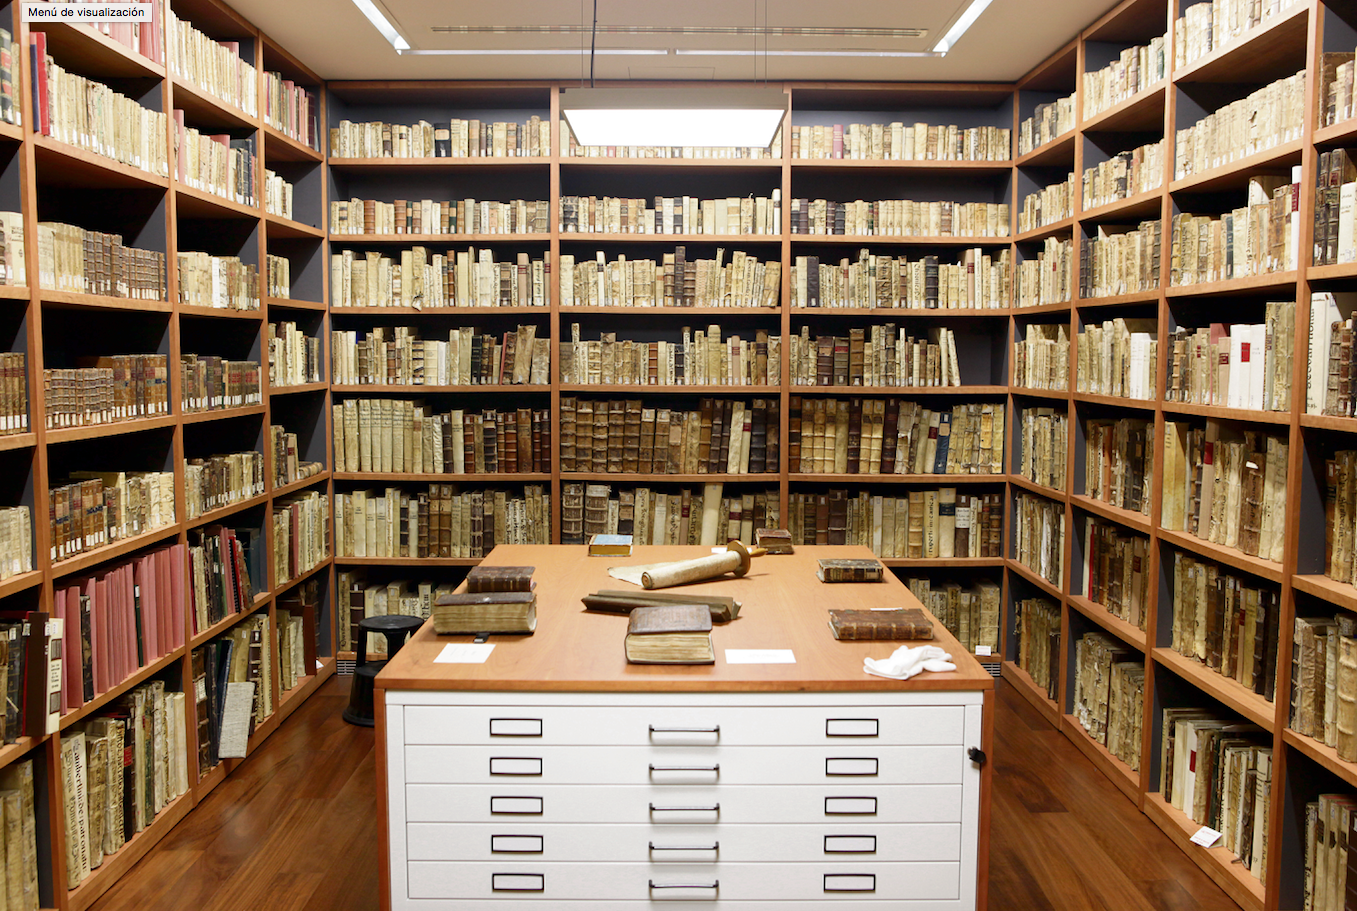 La biblioteca custodia un total de 913 metres lineals de prestatgeria amb el fons antic –amb manuscrits, incunables, llibres rars, obres dels segles xvi a xviii i pergamins– i que es conserva entre 18° i 20° de temperatura i a un 45% d’humitat . FOTO: Art